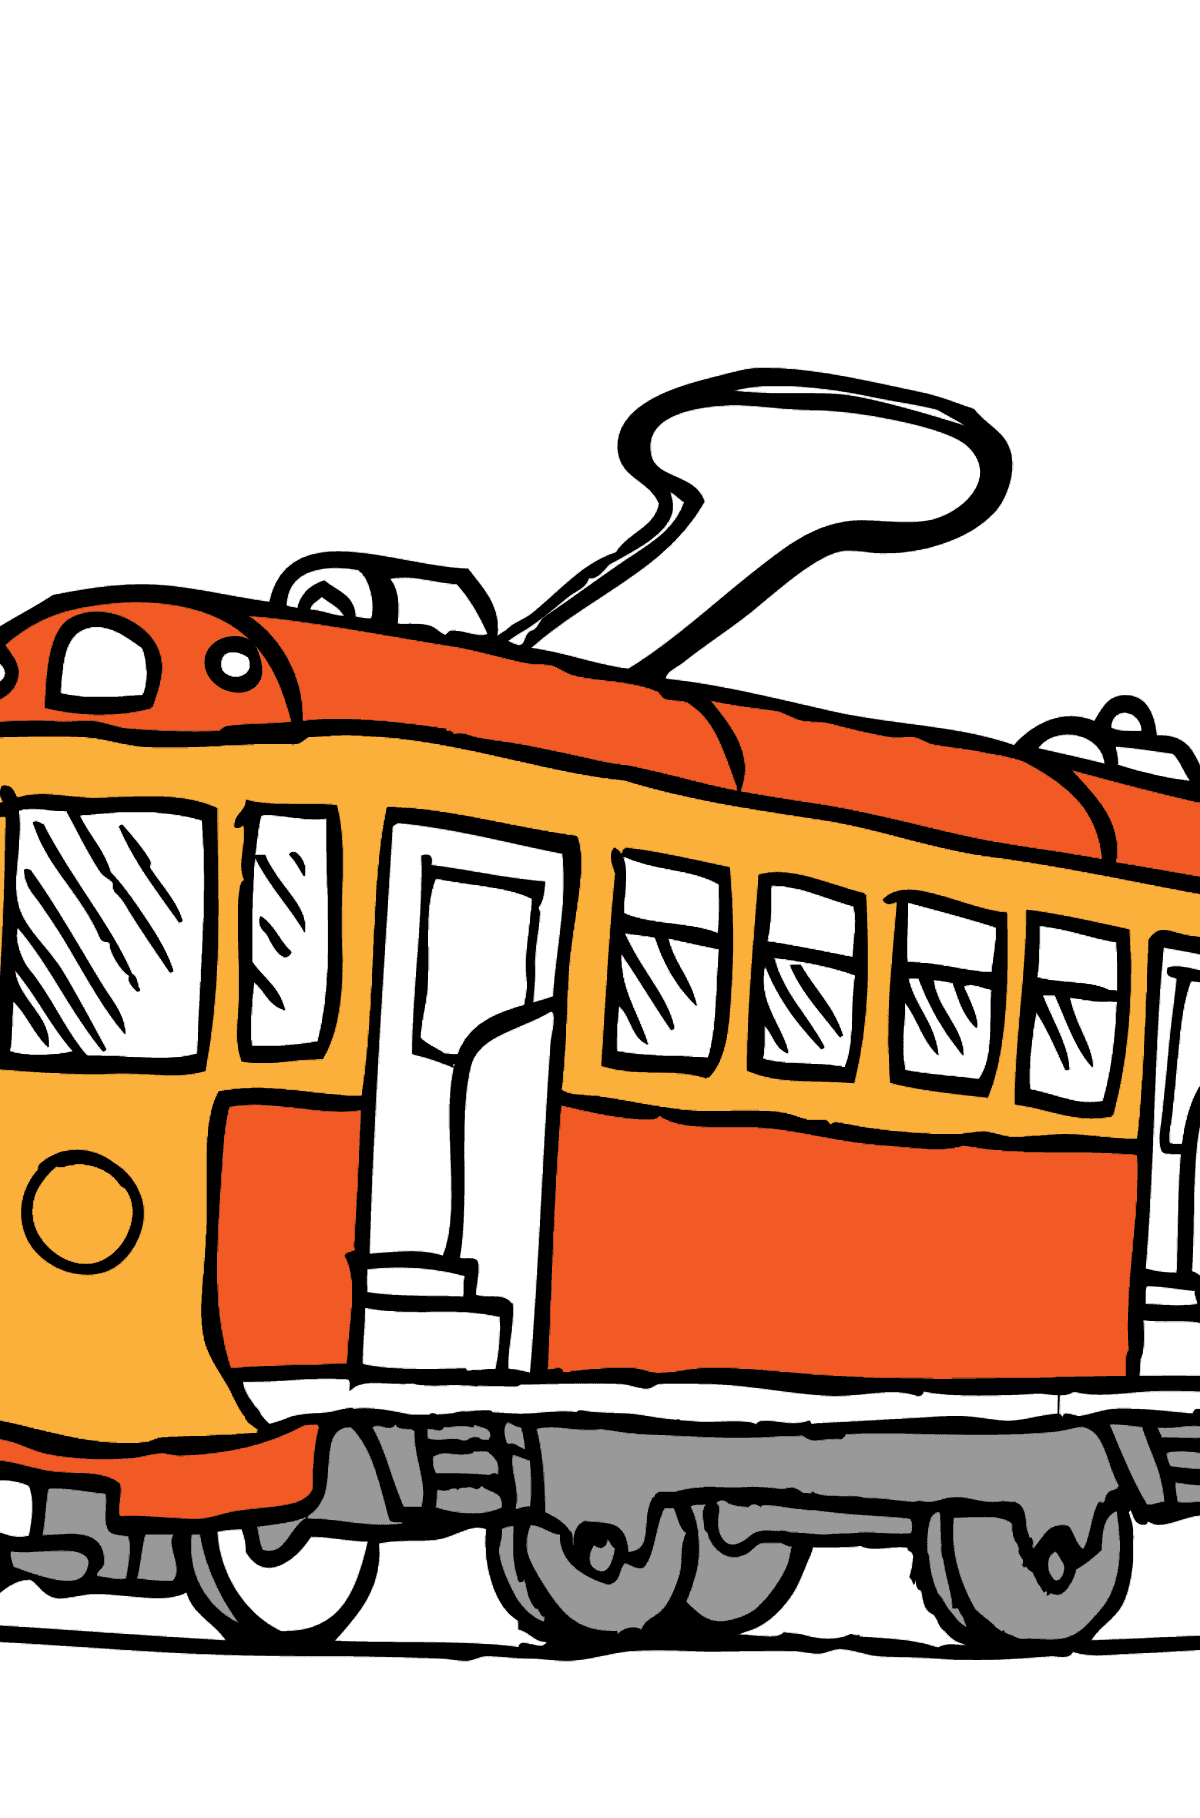 Простая картинка раскраска Трамвай - Картинки для Детей